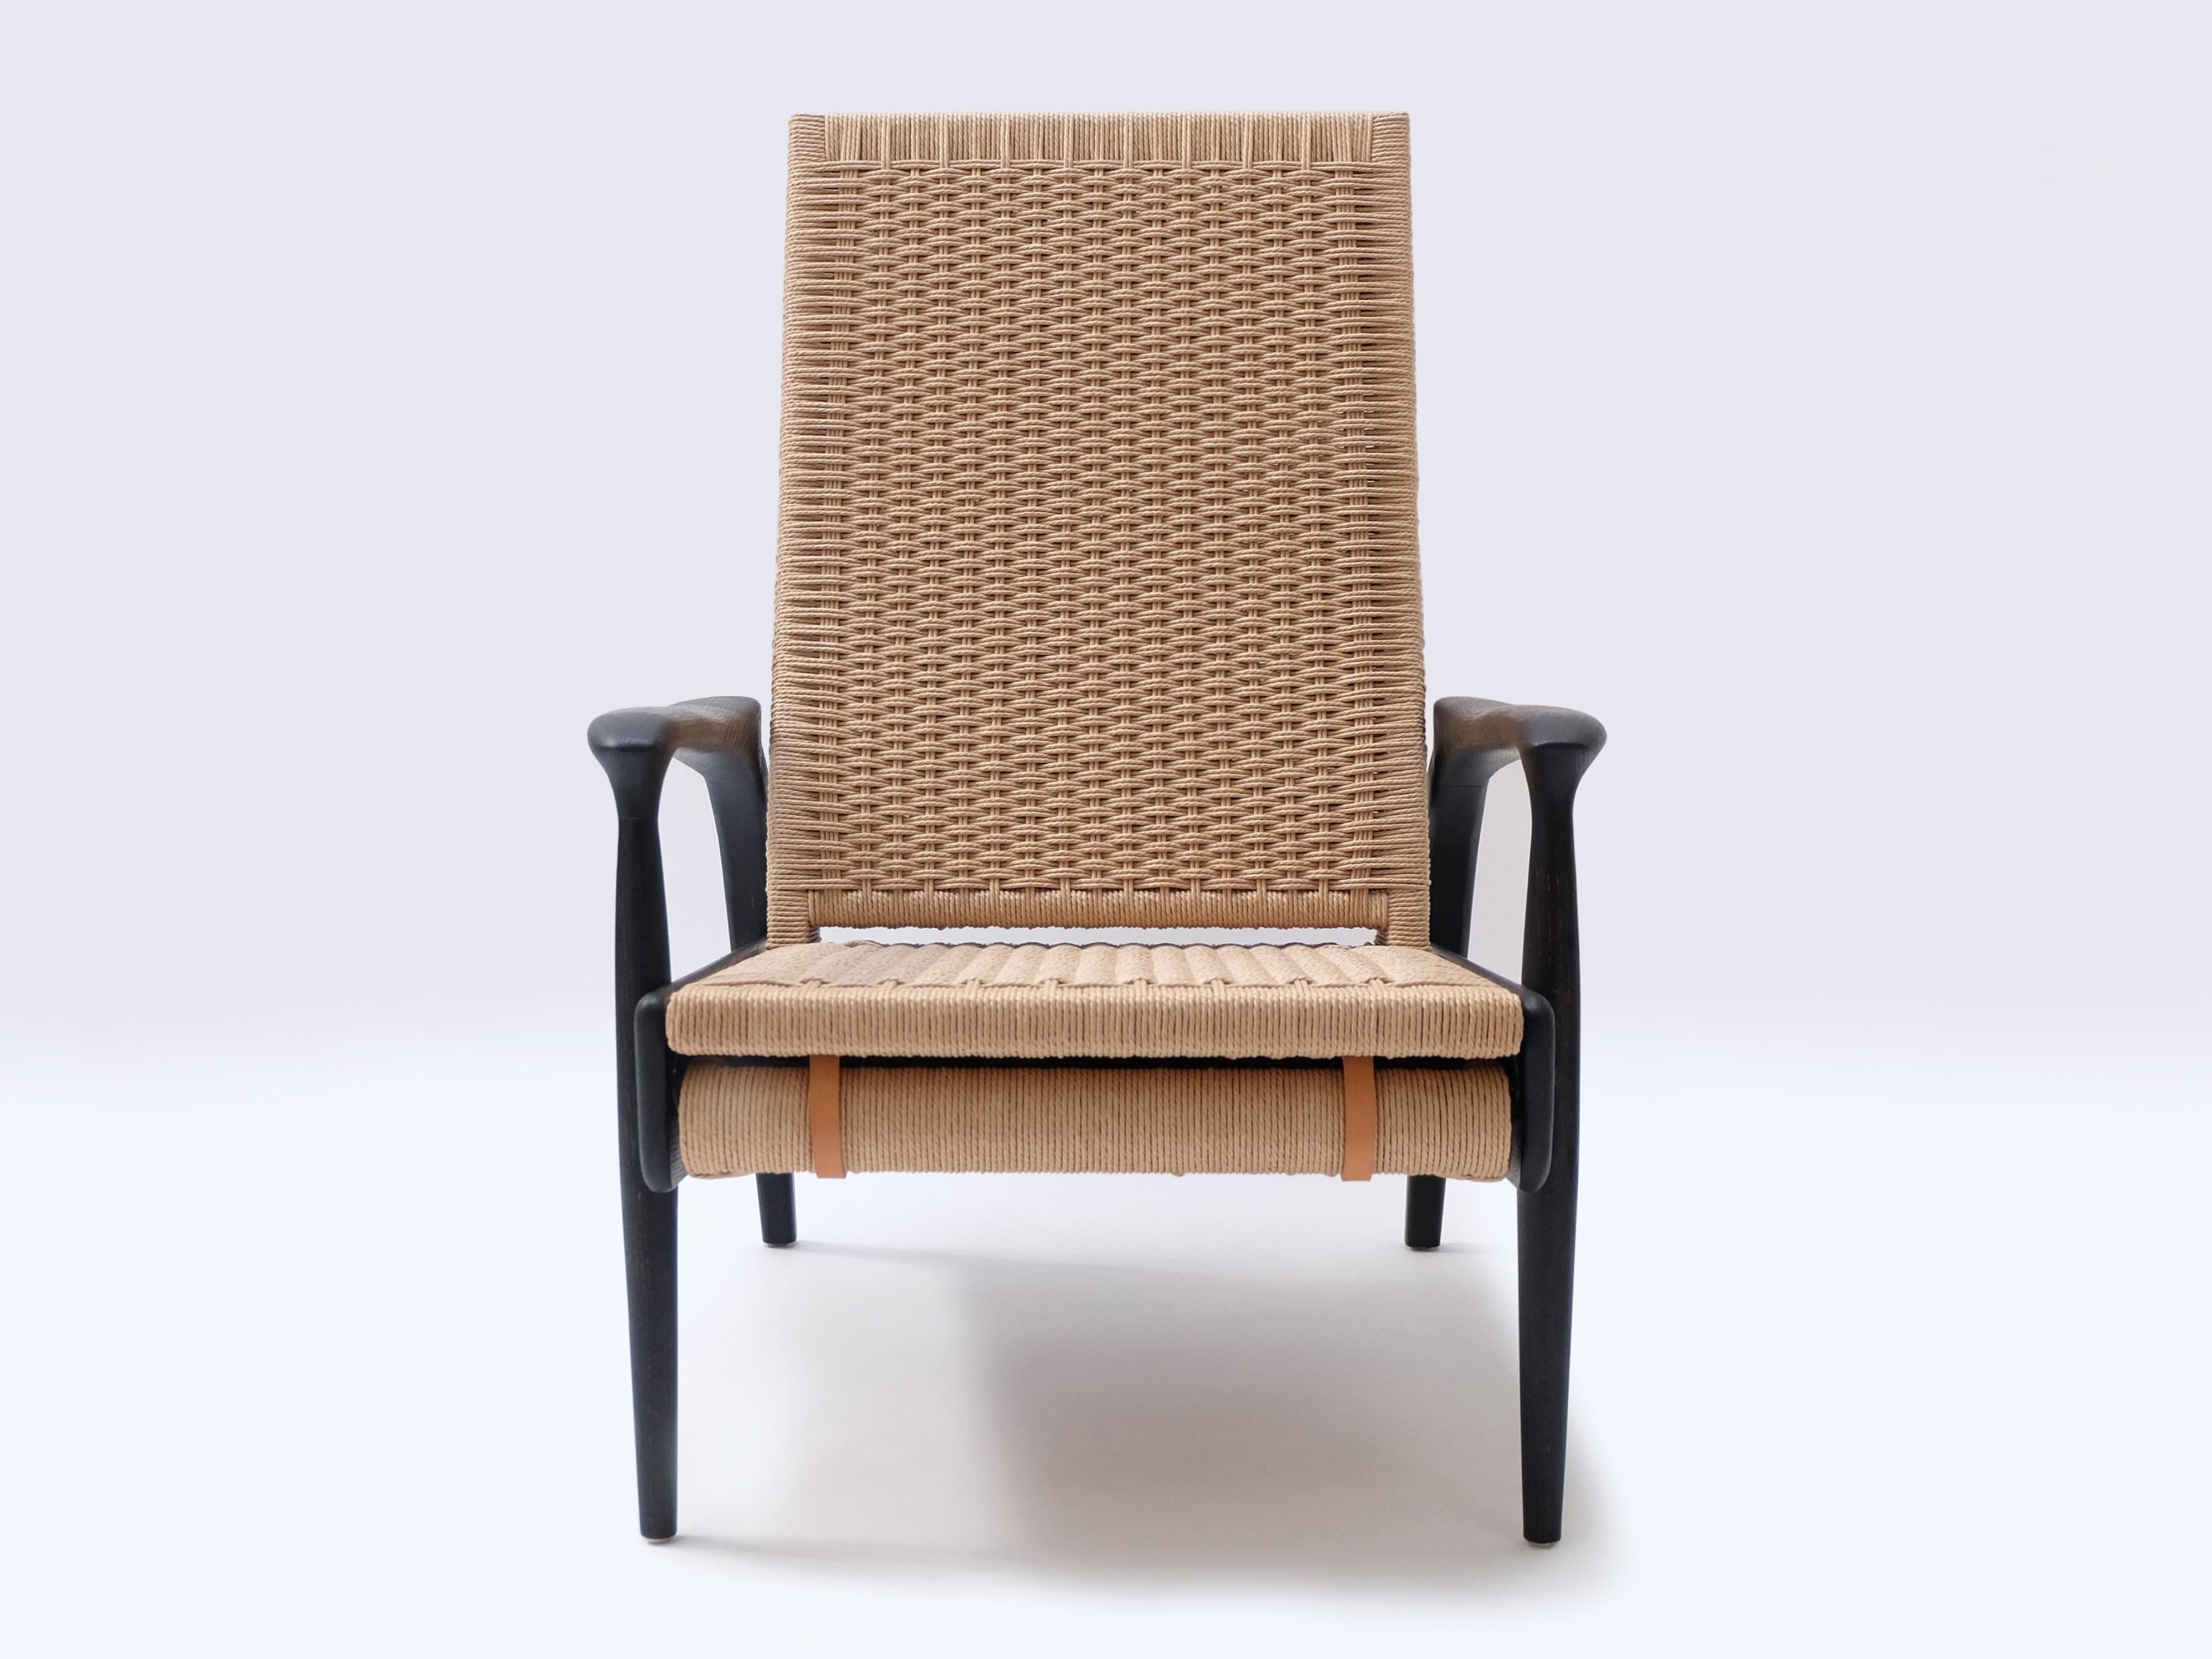 Ein Paar handgefertigte Eco-Lounge-Sessel FENDRIK von Studio180degree
Abgebildet in nachhaltiger, massiver, geschwärzter Eiche und kontrastierendem, natürlichem dänischem Cord

Edel - taktil - raffiniert - nachhaltig
Reclining Eco Lounge Chair